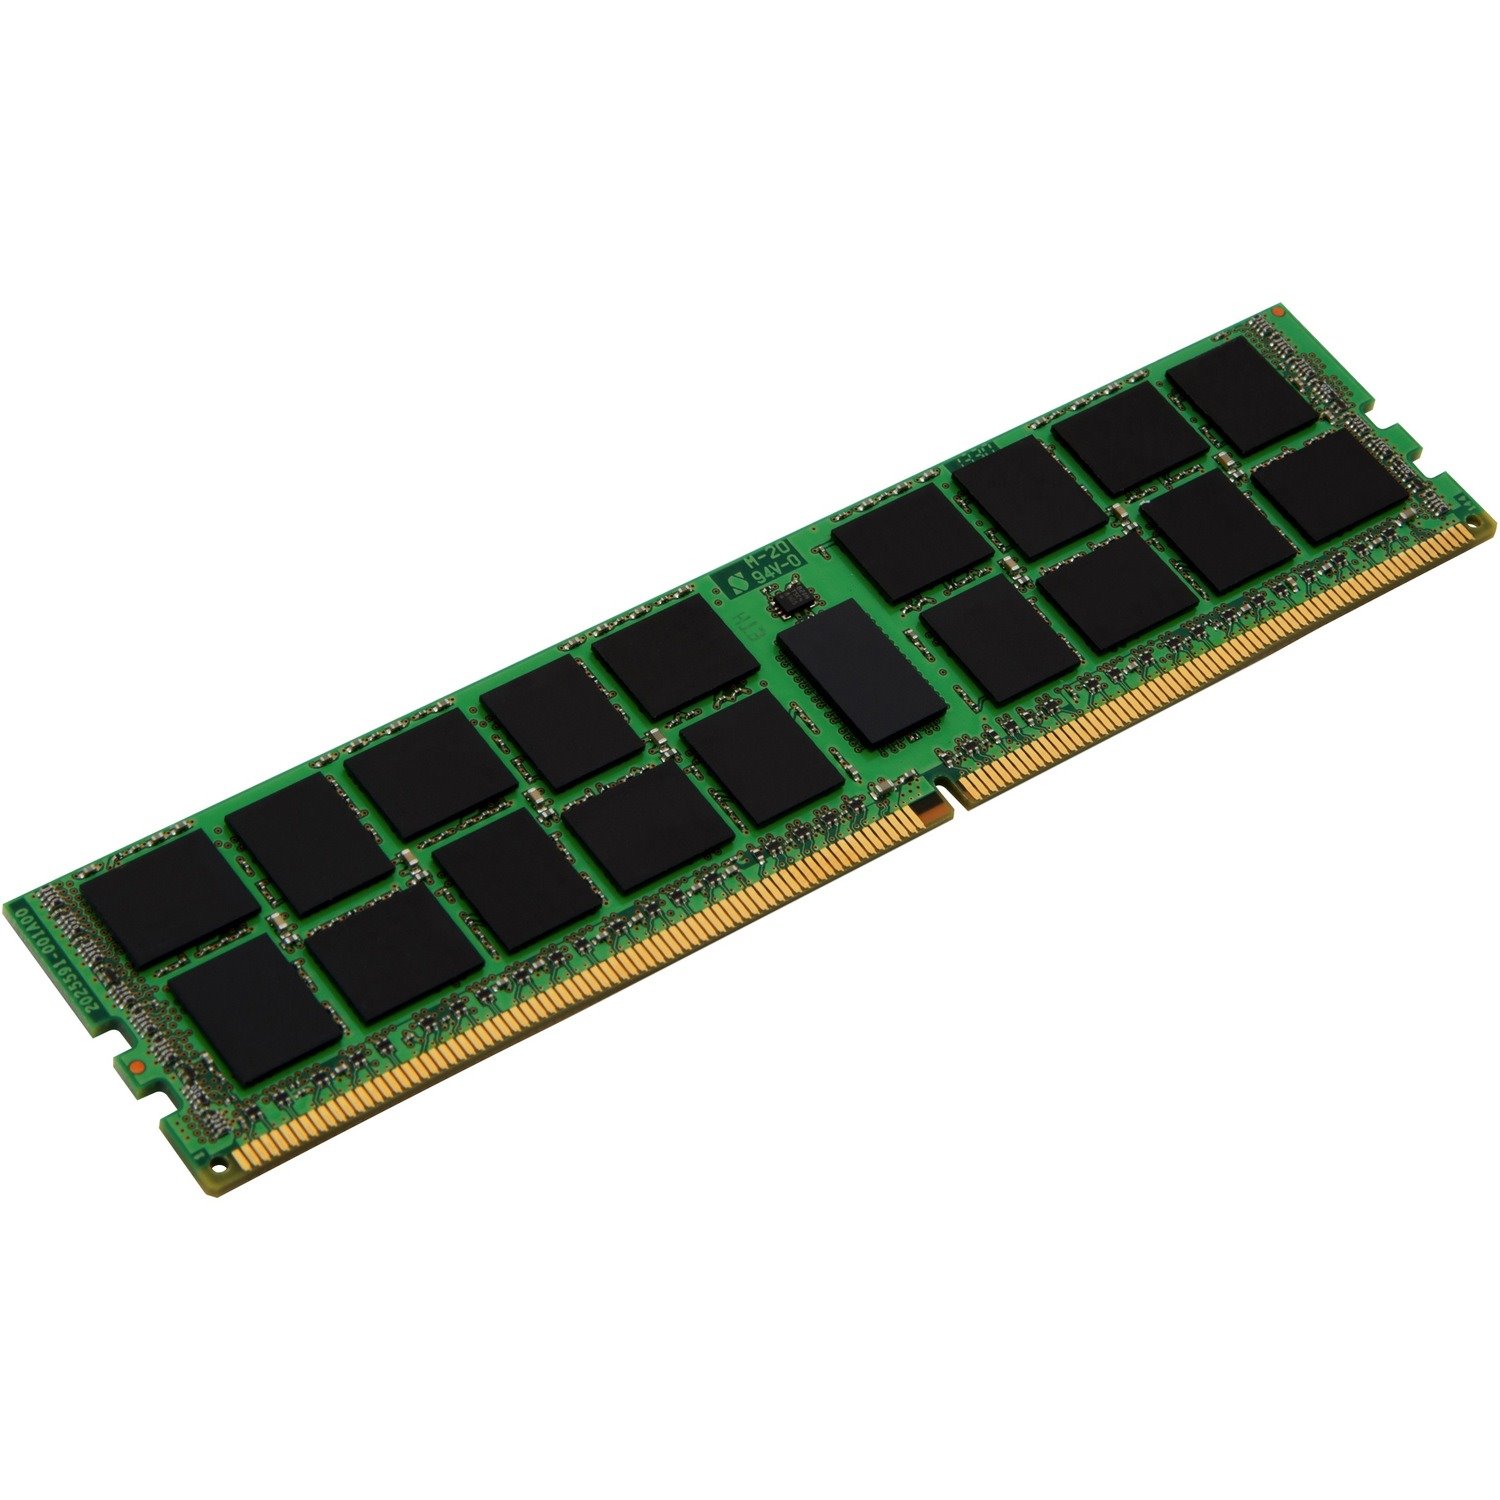 Kingston RAM Module - 8 GB - DDR4-2666/PC4-21300 DDR4 SDRAM - 2666 MHz - CL19 - 1.20 V